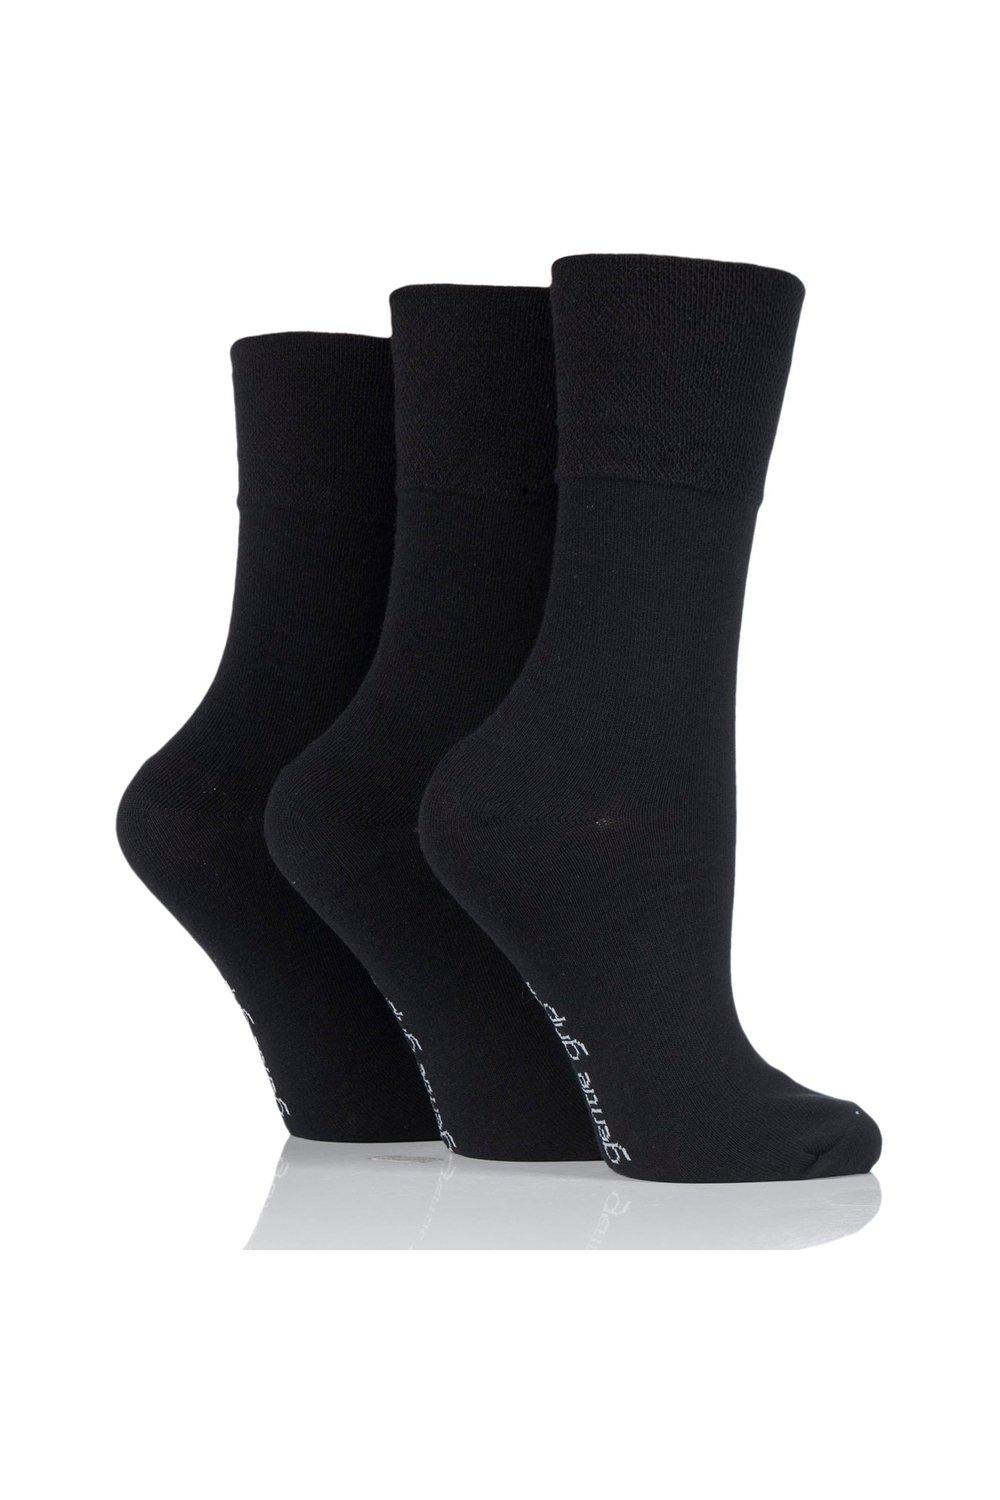 3 Pair Plain Cotton Socks